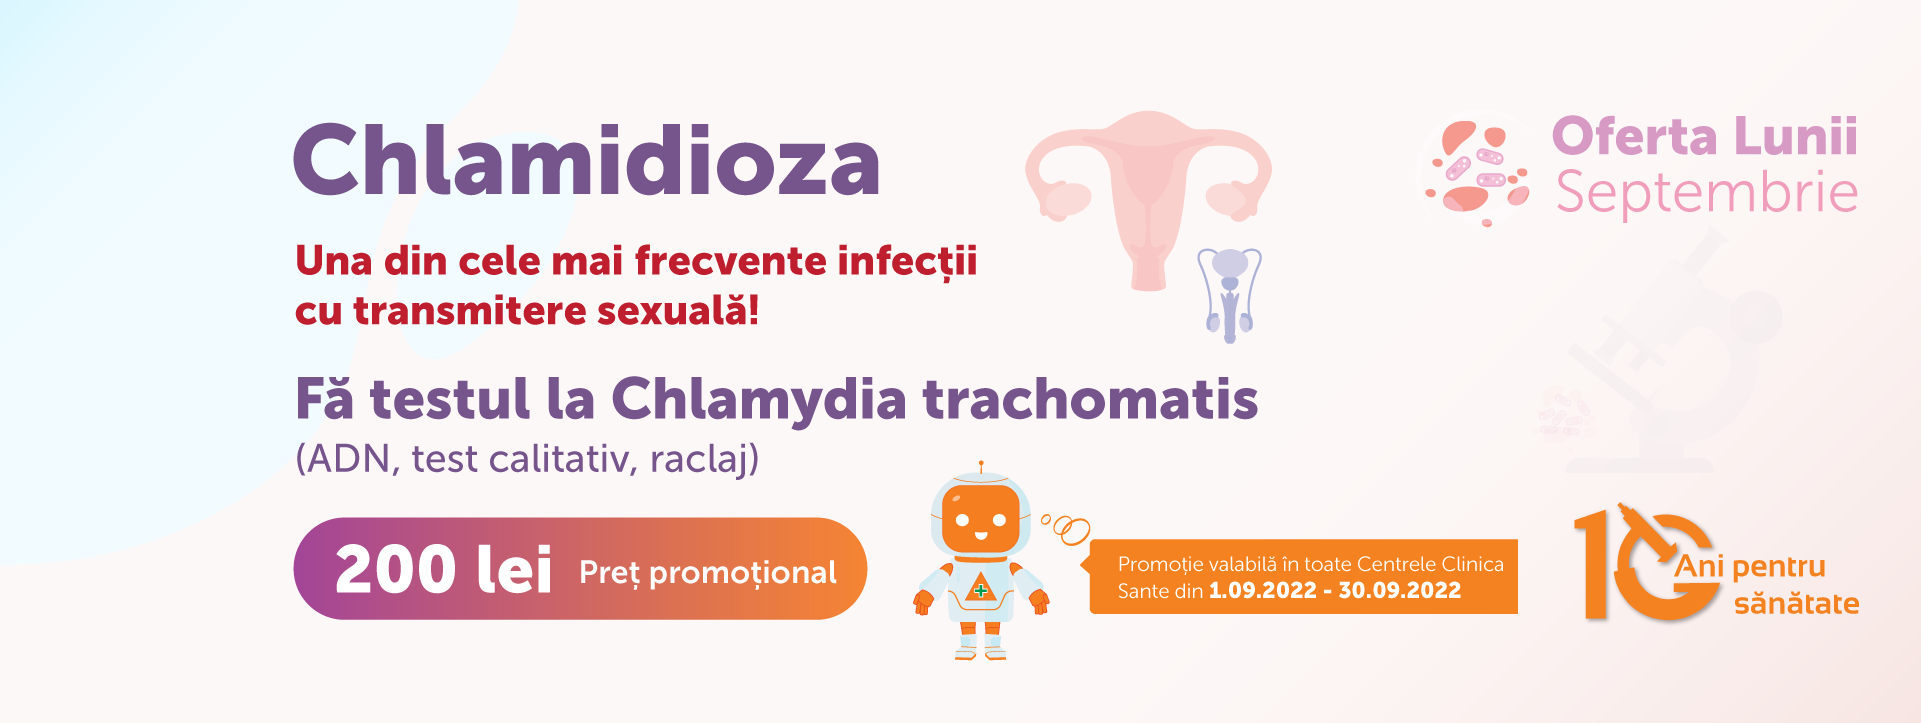 promo image Chlamidioza, una din cele mai frecvente infecții cu transmitere sexuală